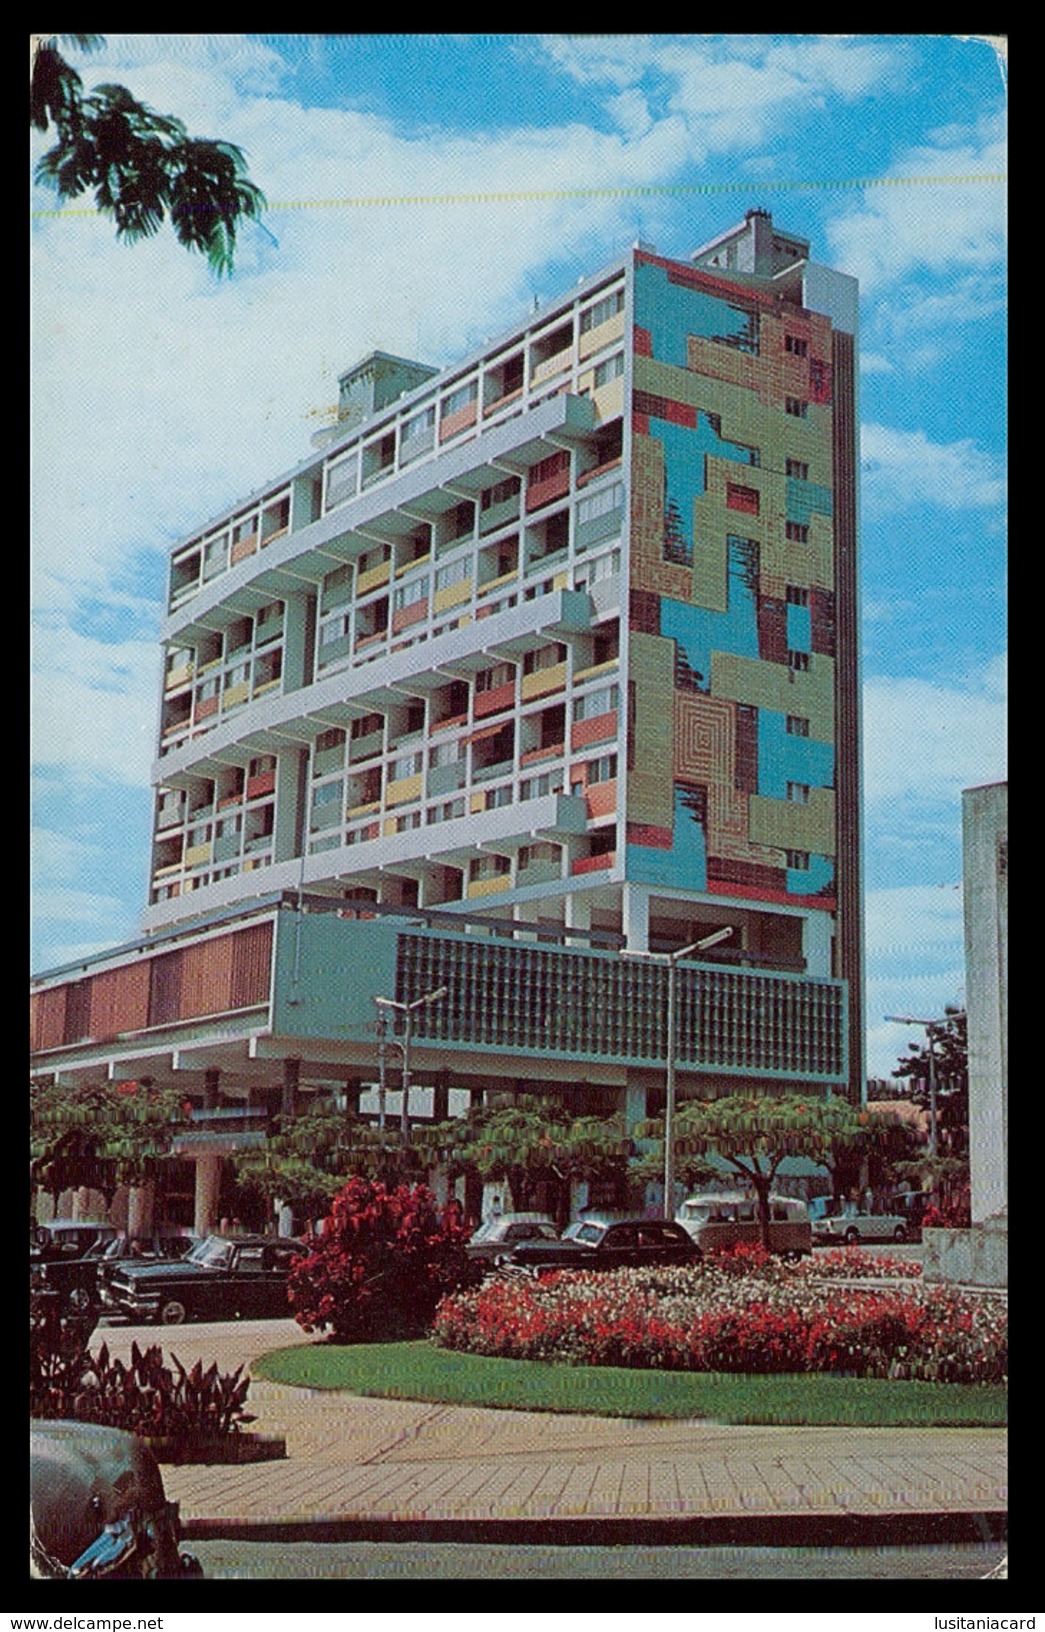 LOURENÇO MARQUES - BANCOS - Edificio Do Montepio. Prédio Moderno E Arrojado  (Ed.Focarte Nº 2) Carte Postale - Mozambique